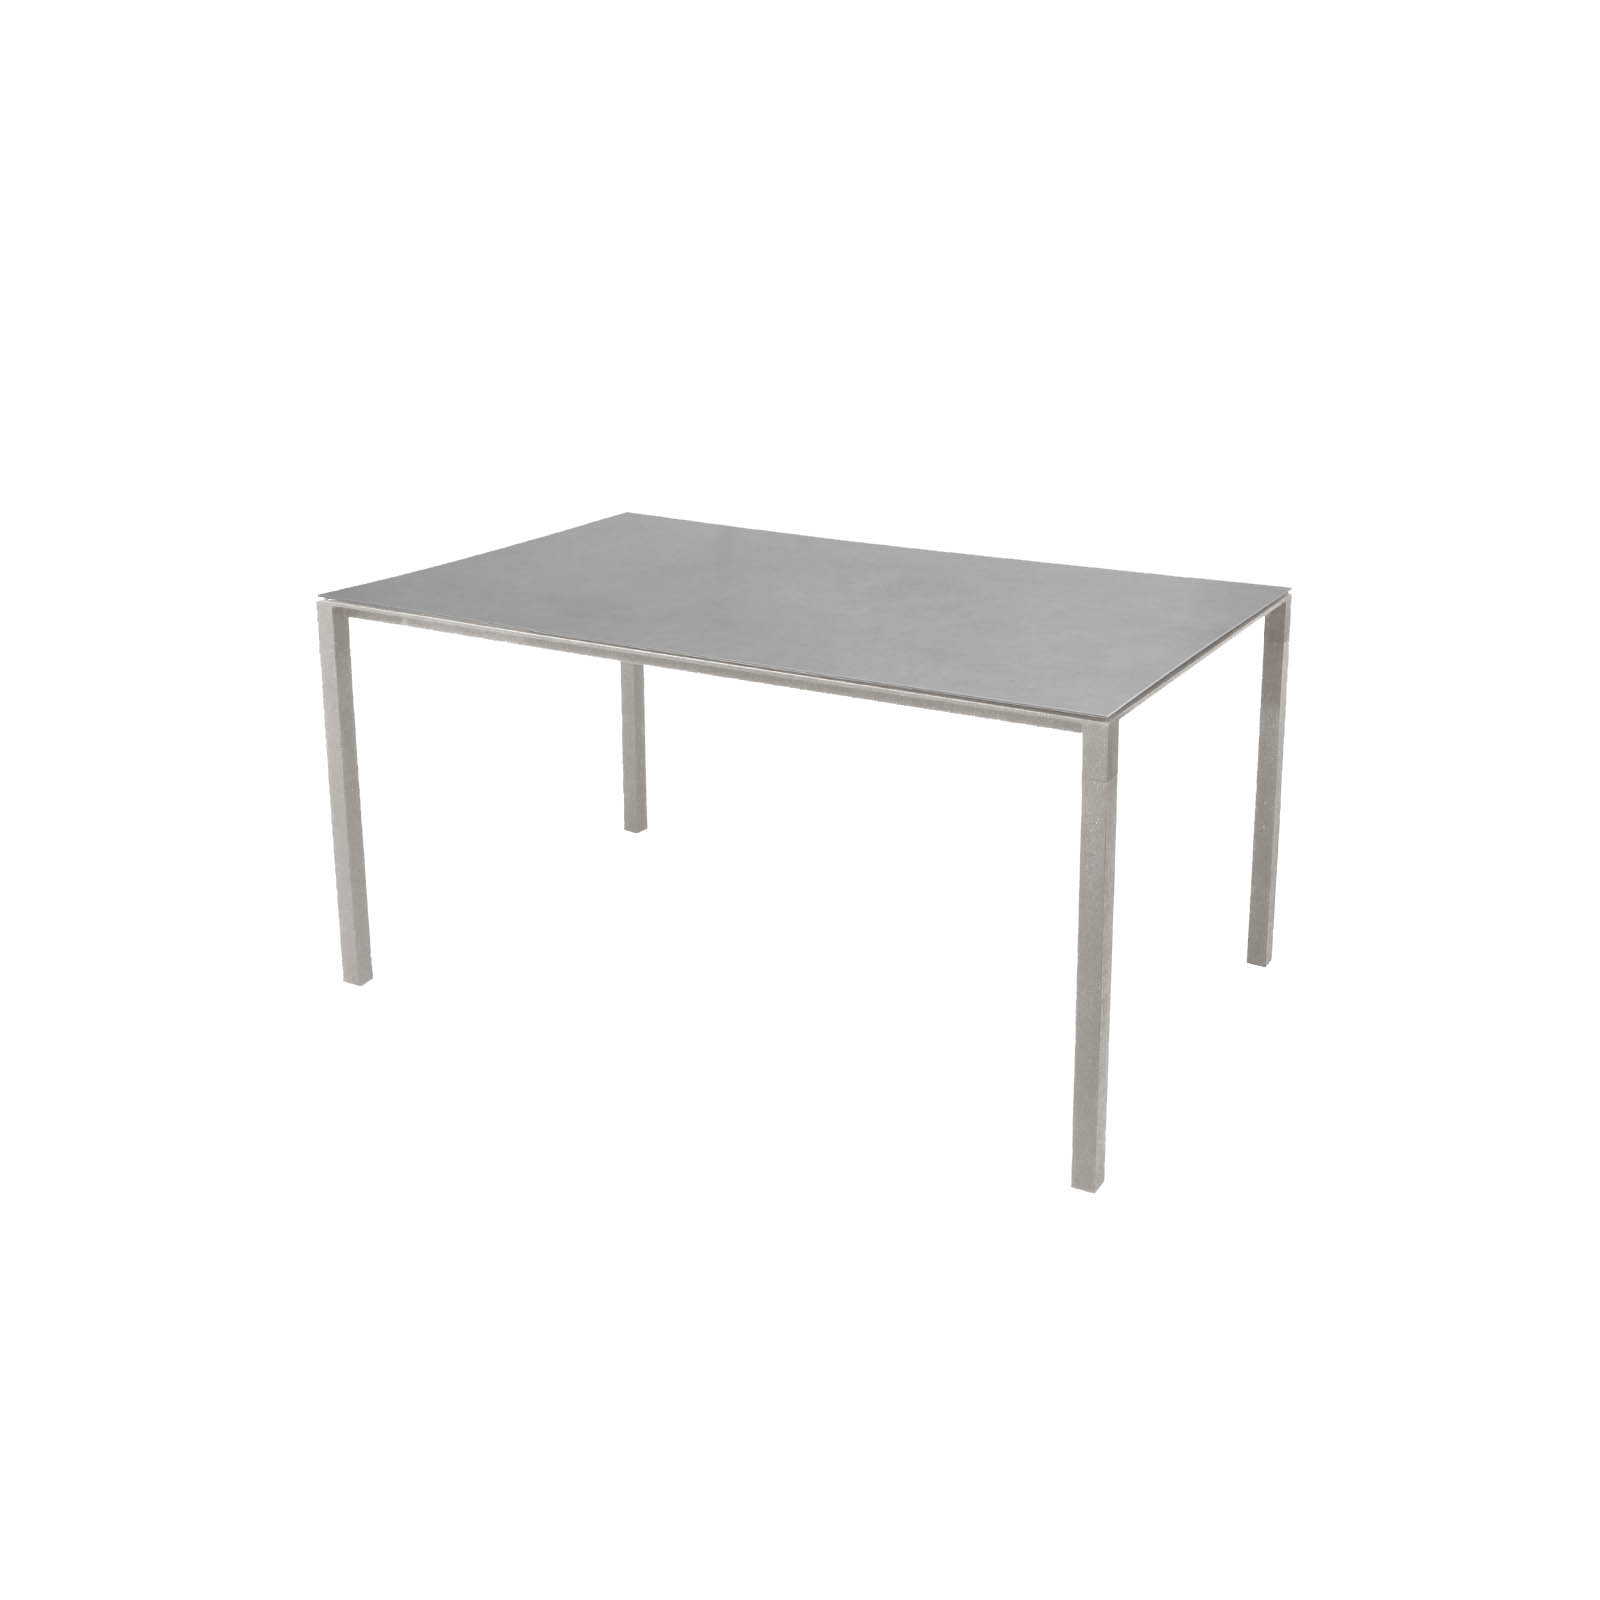 Pure Tisch 150x90 cm aus Aluminium in Taupe mit Tischplatte aus Ceramic in Concrete Grey